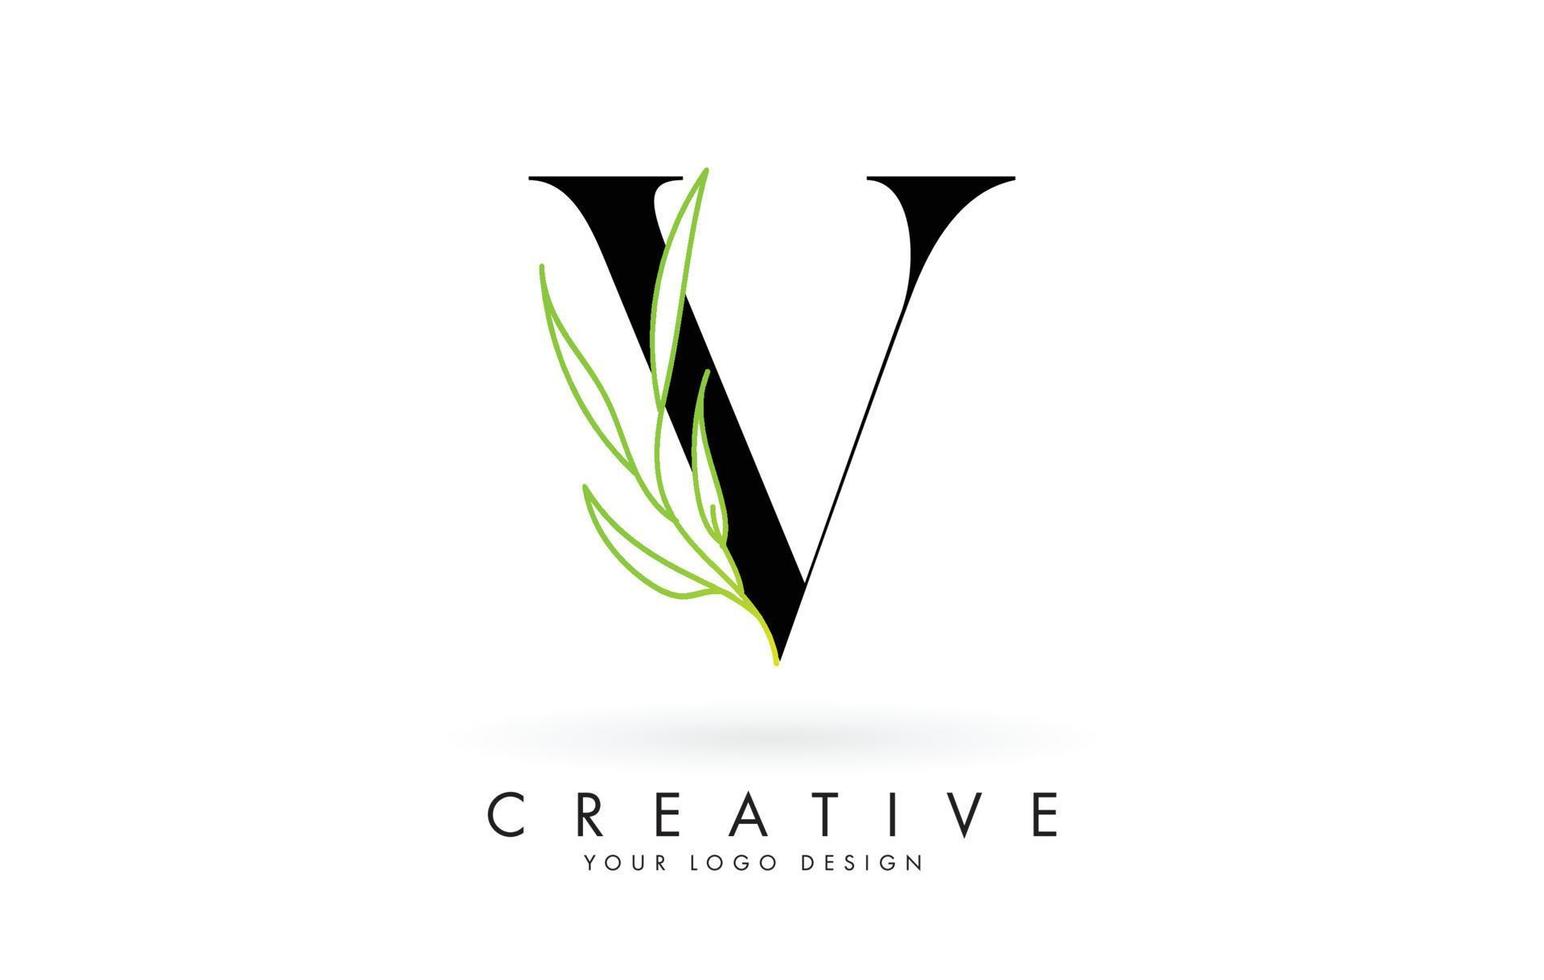 Elegant V letter logo design with long leaves branch vector illustration.